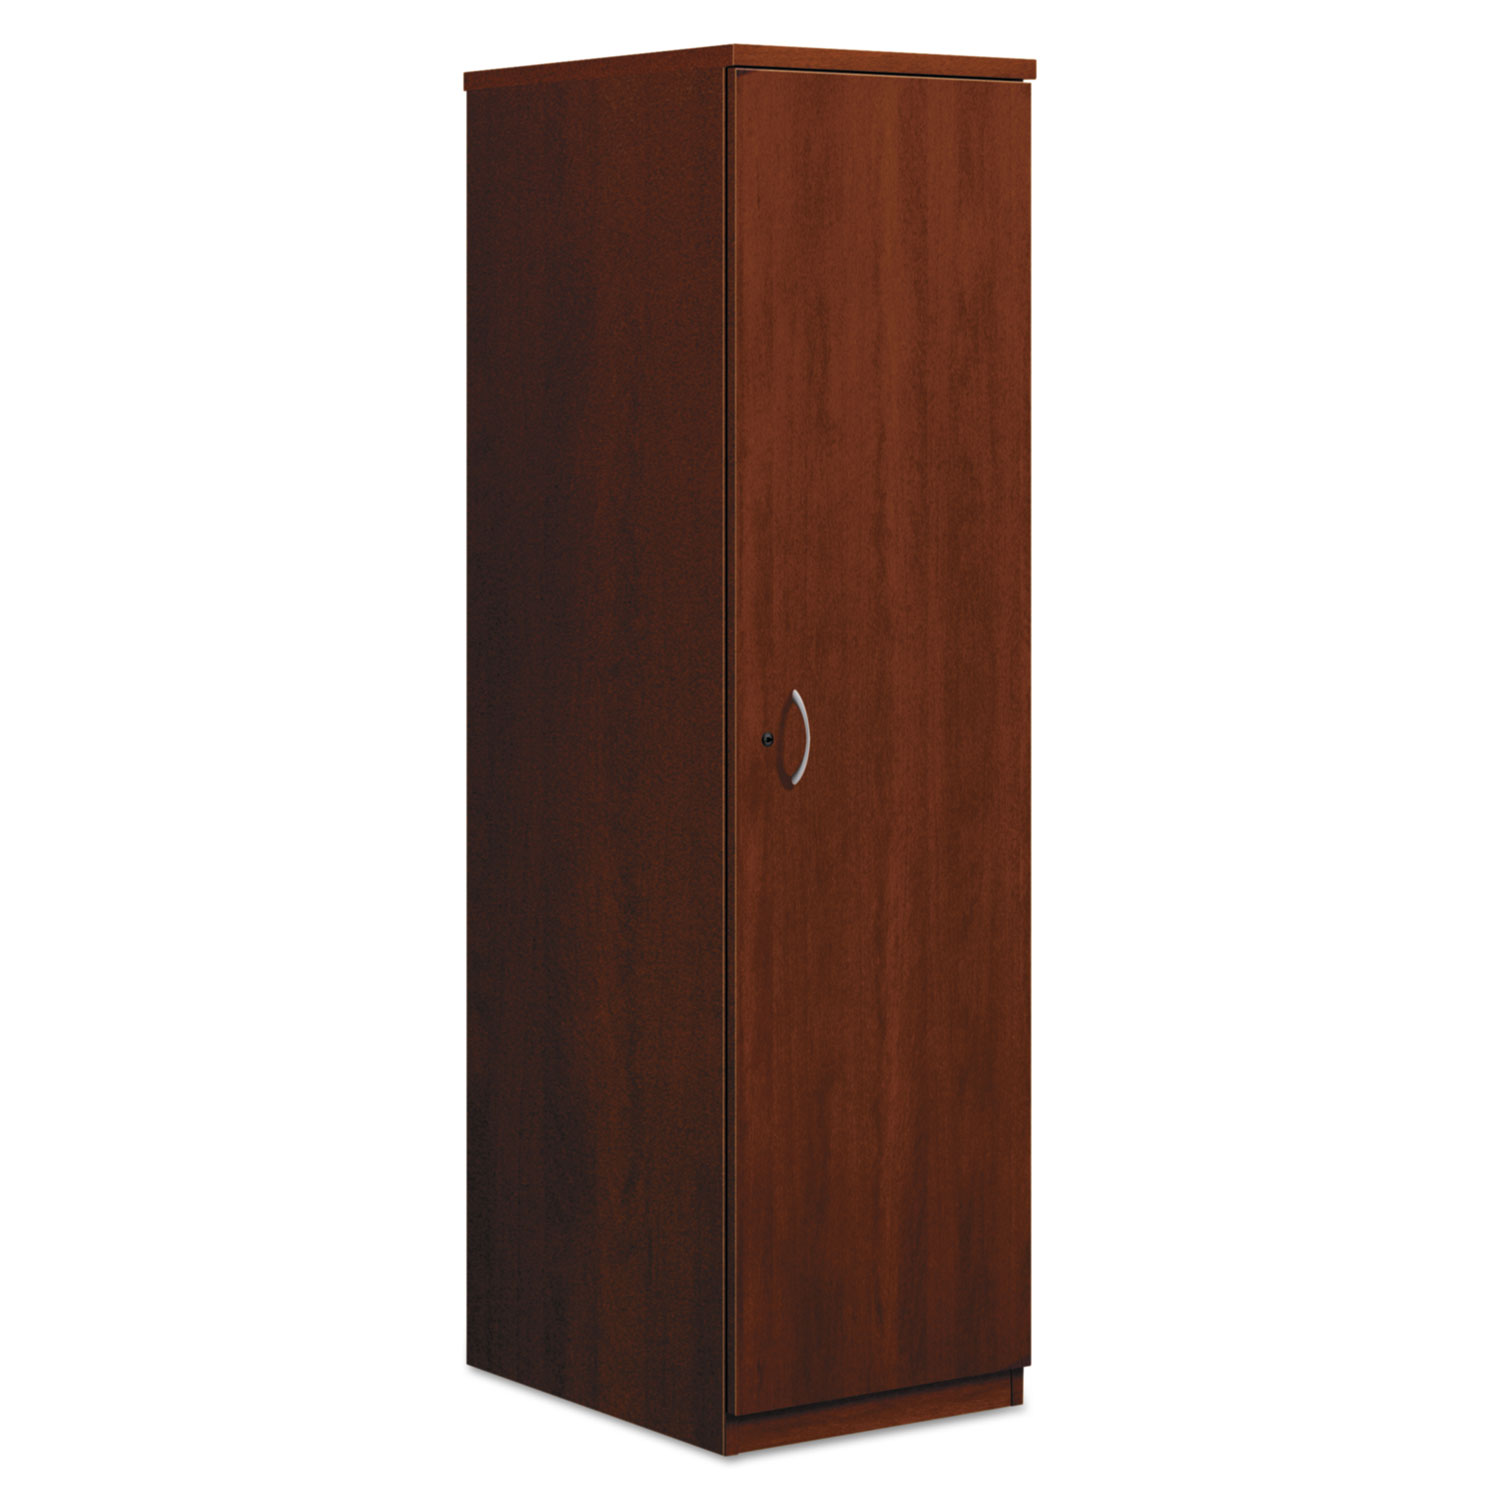 BL Series Personal Wardrobe Cabinet, 18w x 24d x 66h, Medium Cherry